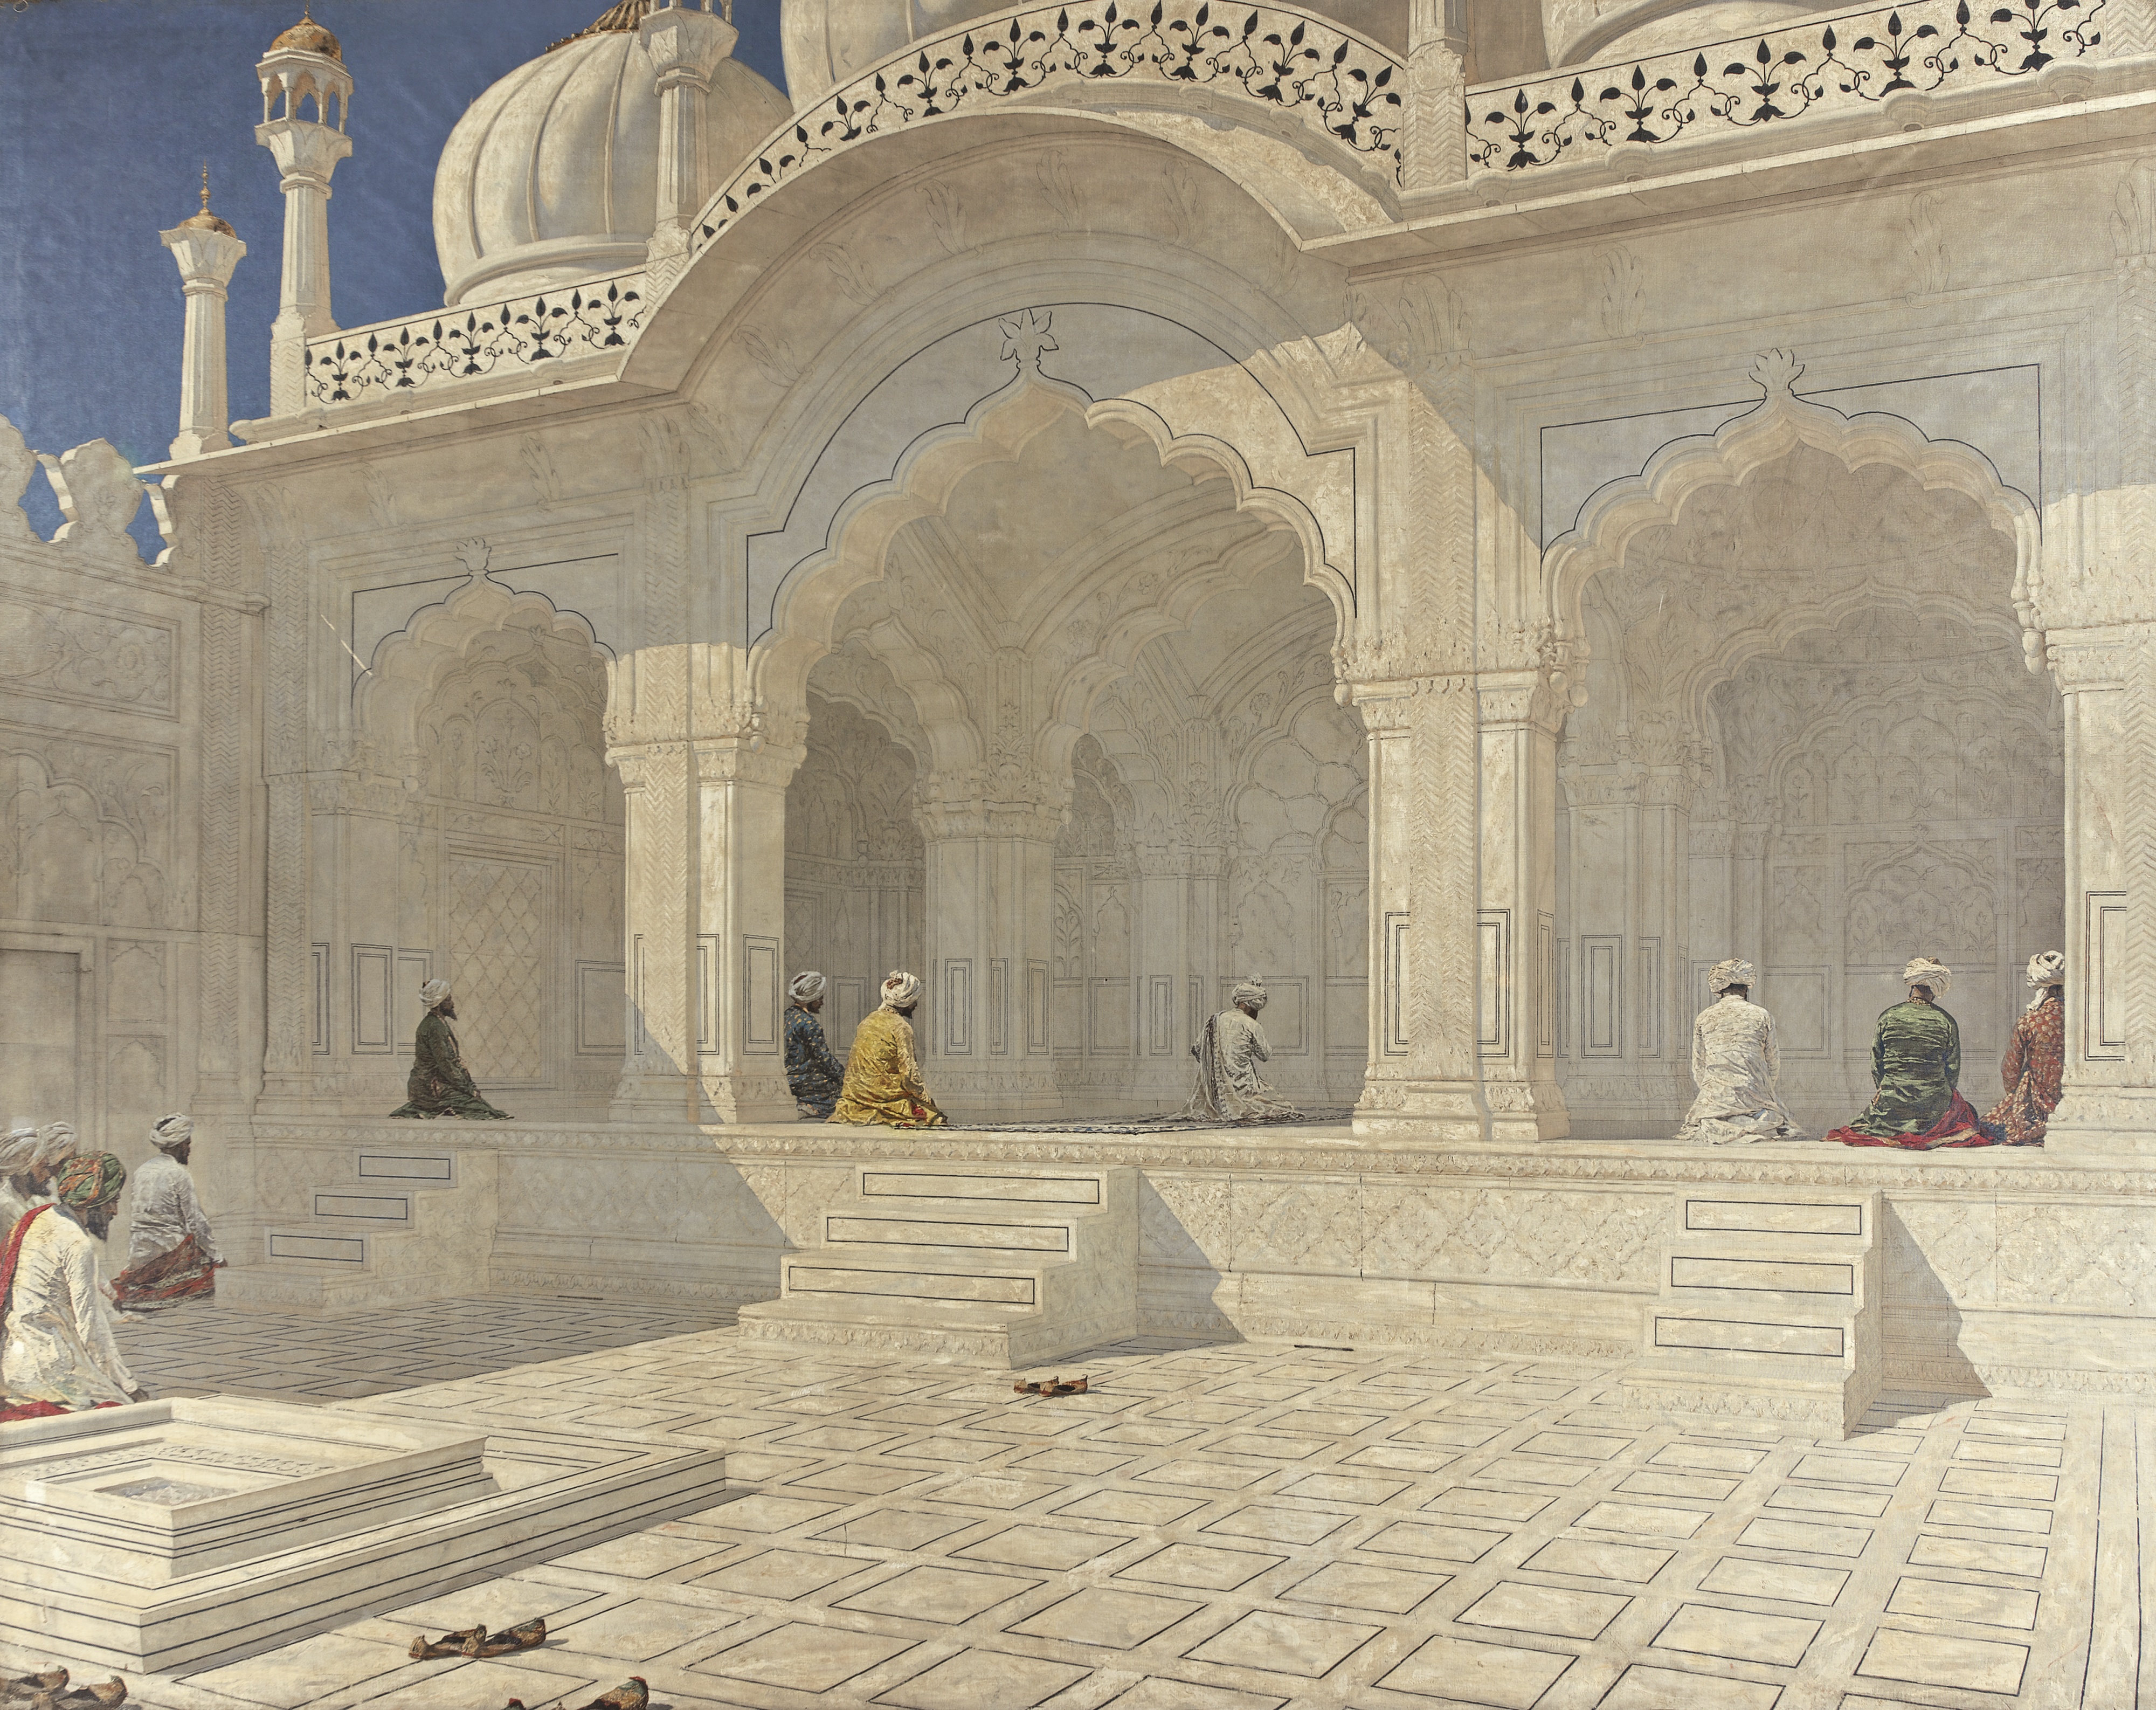 Жемчужная мечеть в Дели by Vasily Vereshchagin - 1876-79 - 395 x 500 см 